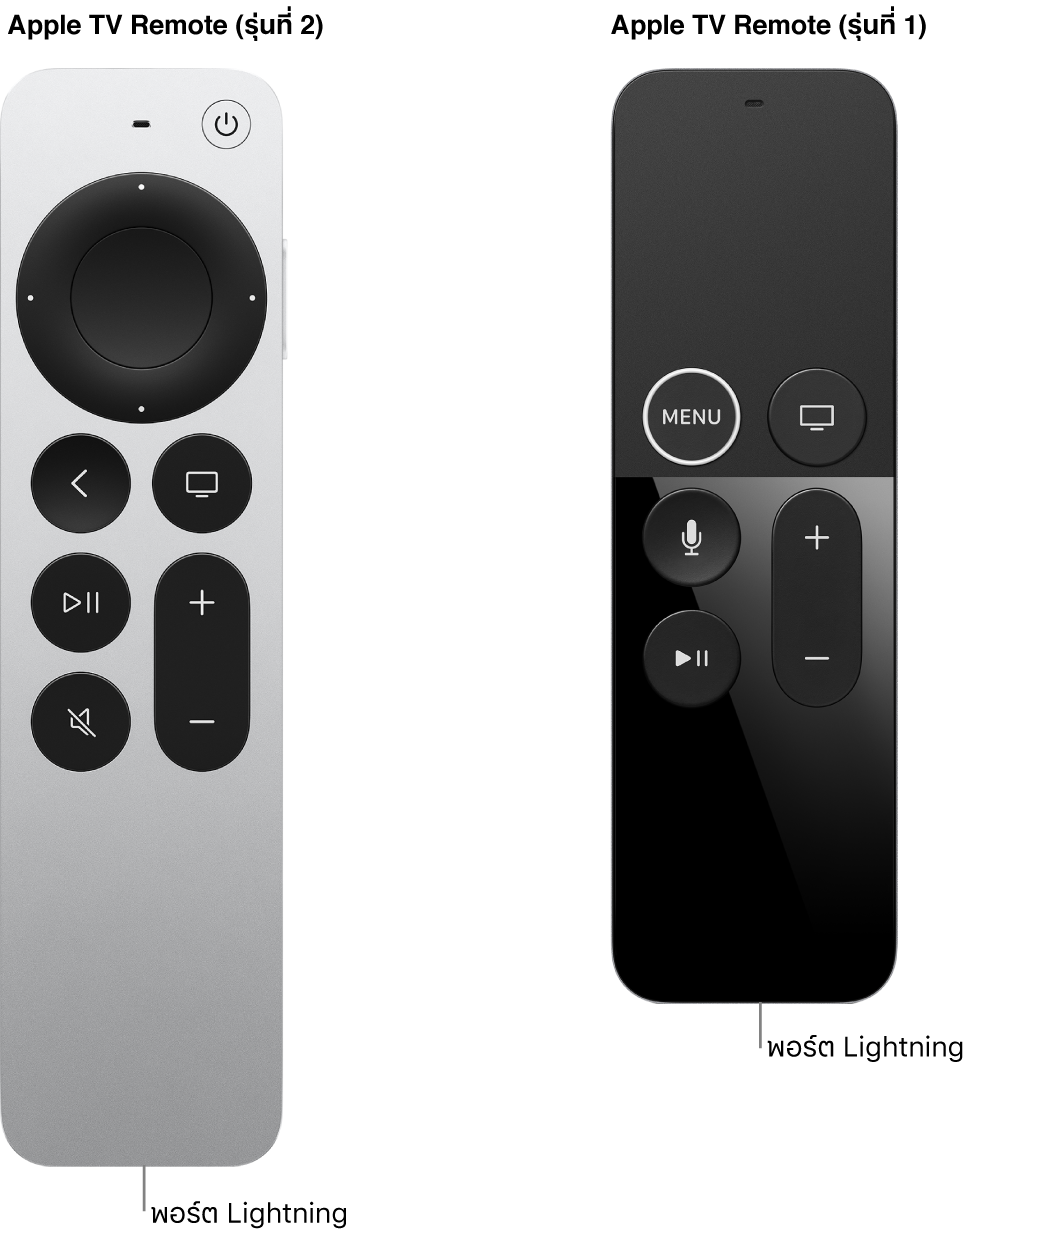 ภาพของ Apple TV Remote (รุ่นที่ 2) และ Apple TV Remote (รุ่นที่ 1) ที่แสดงพอร์ต Lightning